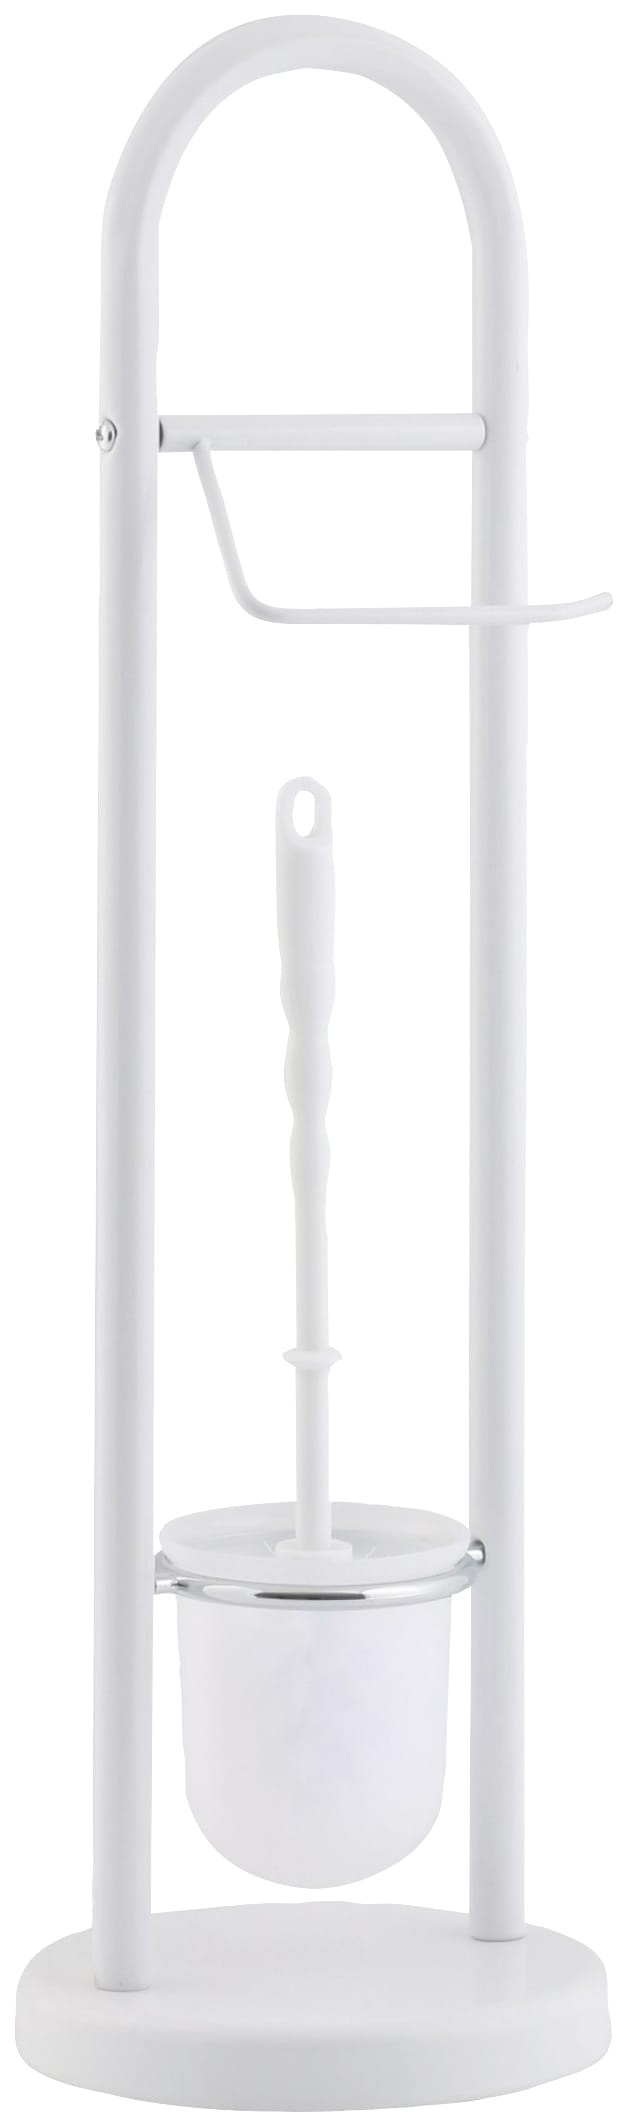 WC-Garnitur, aus Stahl-Kunststoff, weiß, Höhe: 64,5 cm